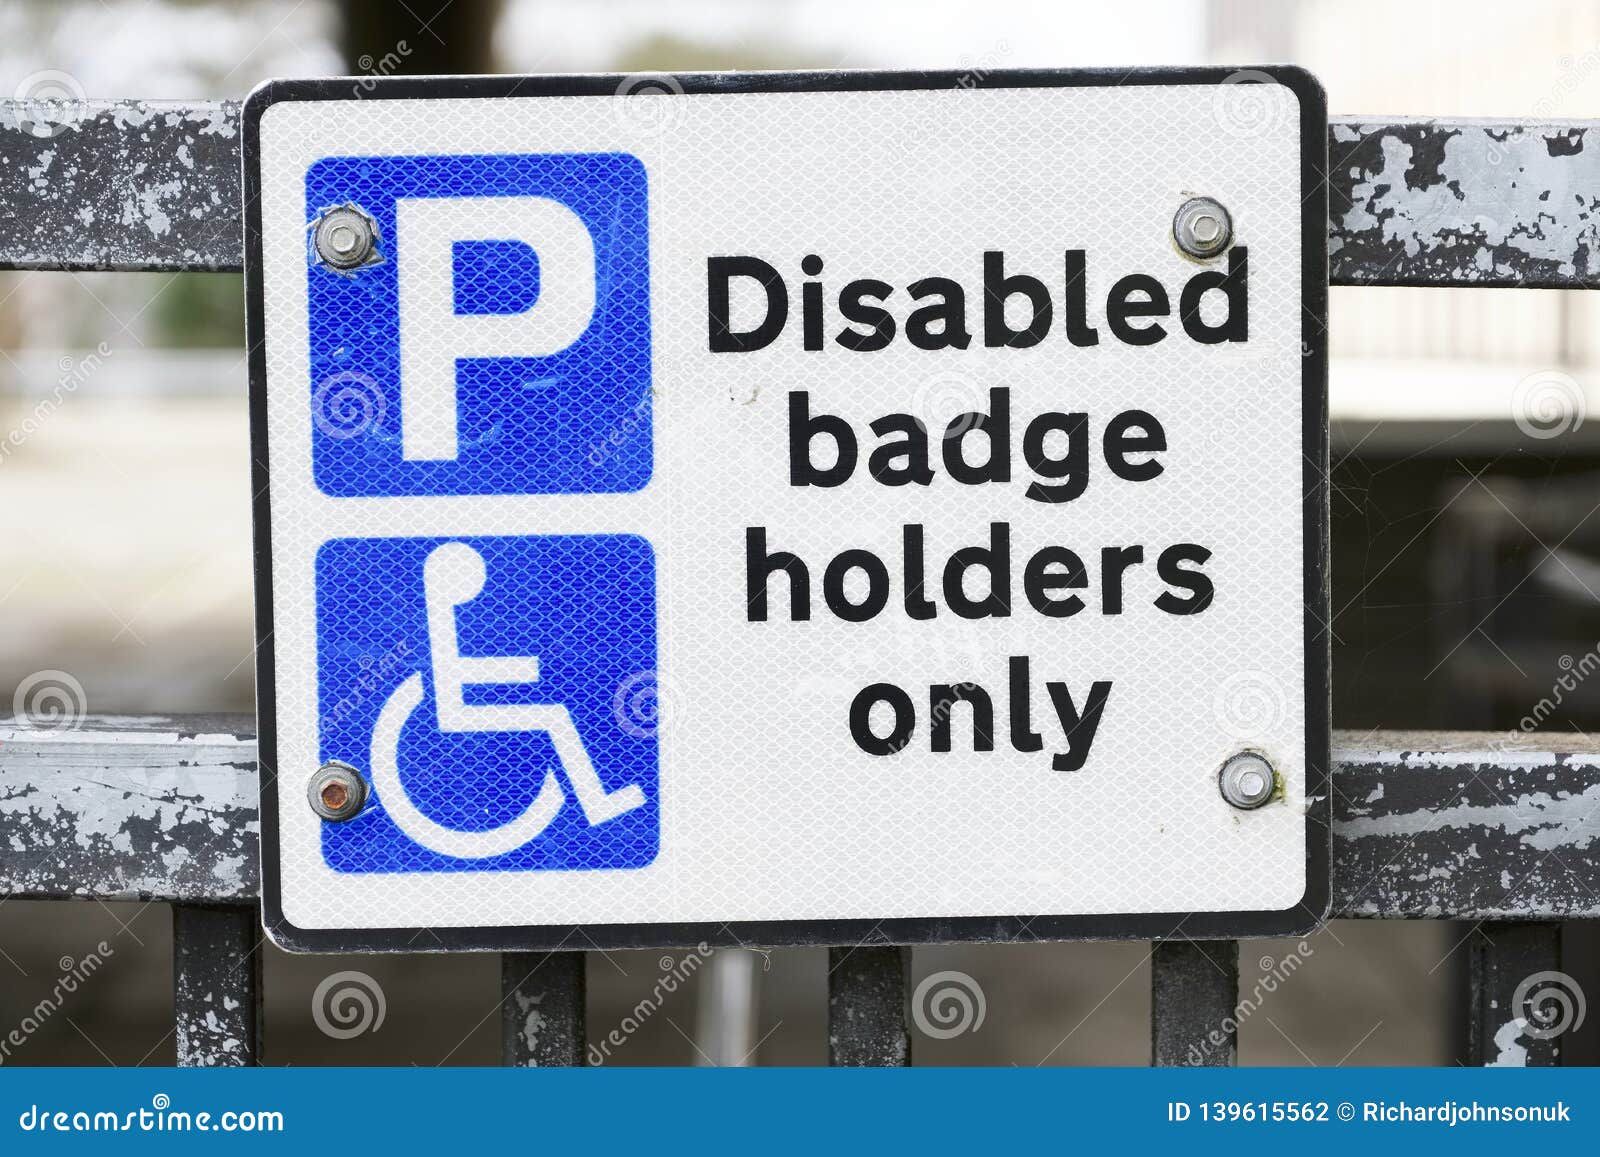 Disabled car badge holder